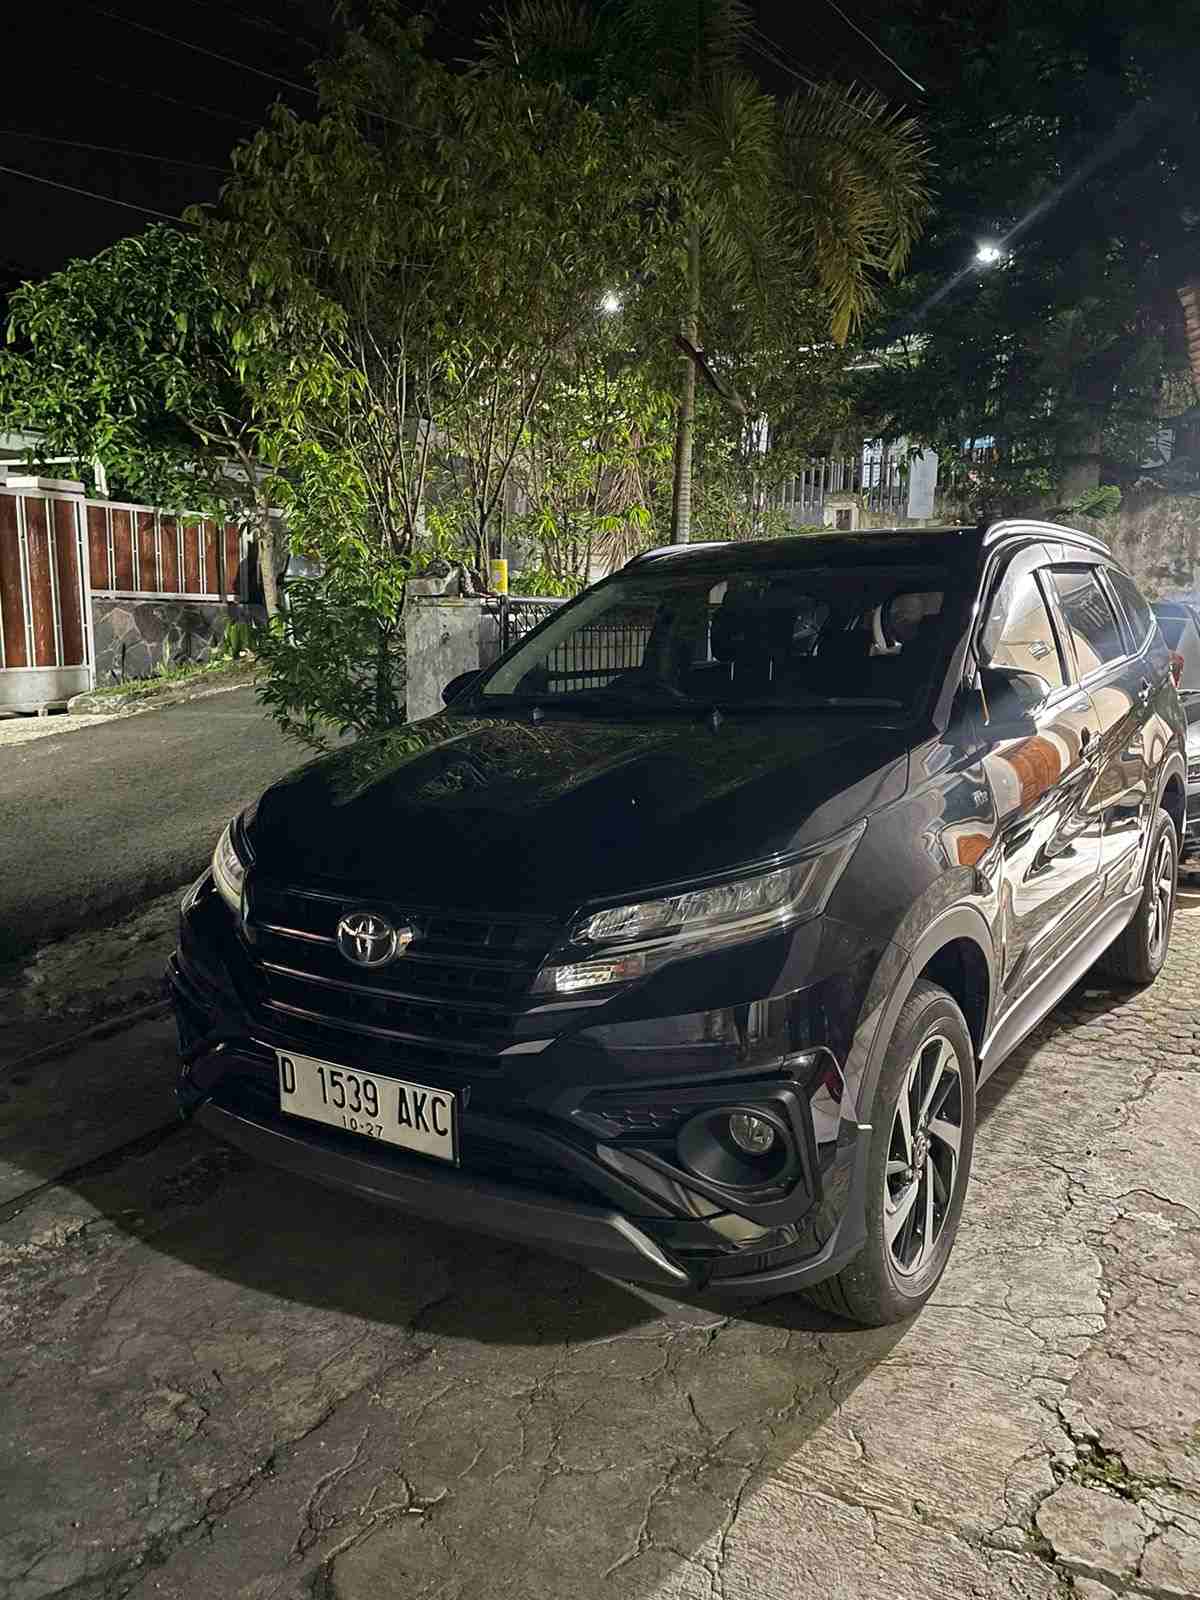 Promo Sewa Mobil Avanza Di Cirebon